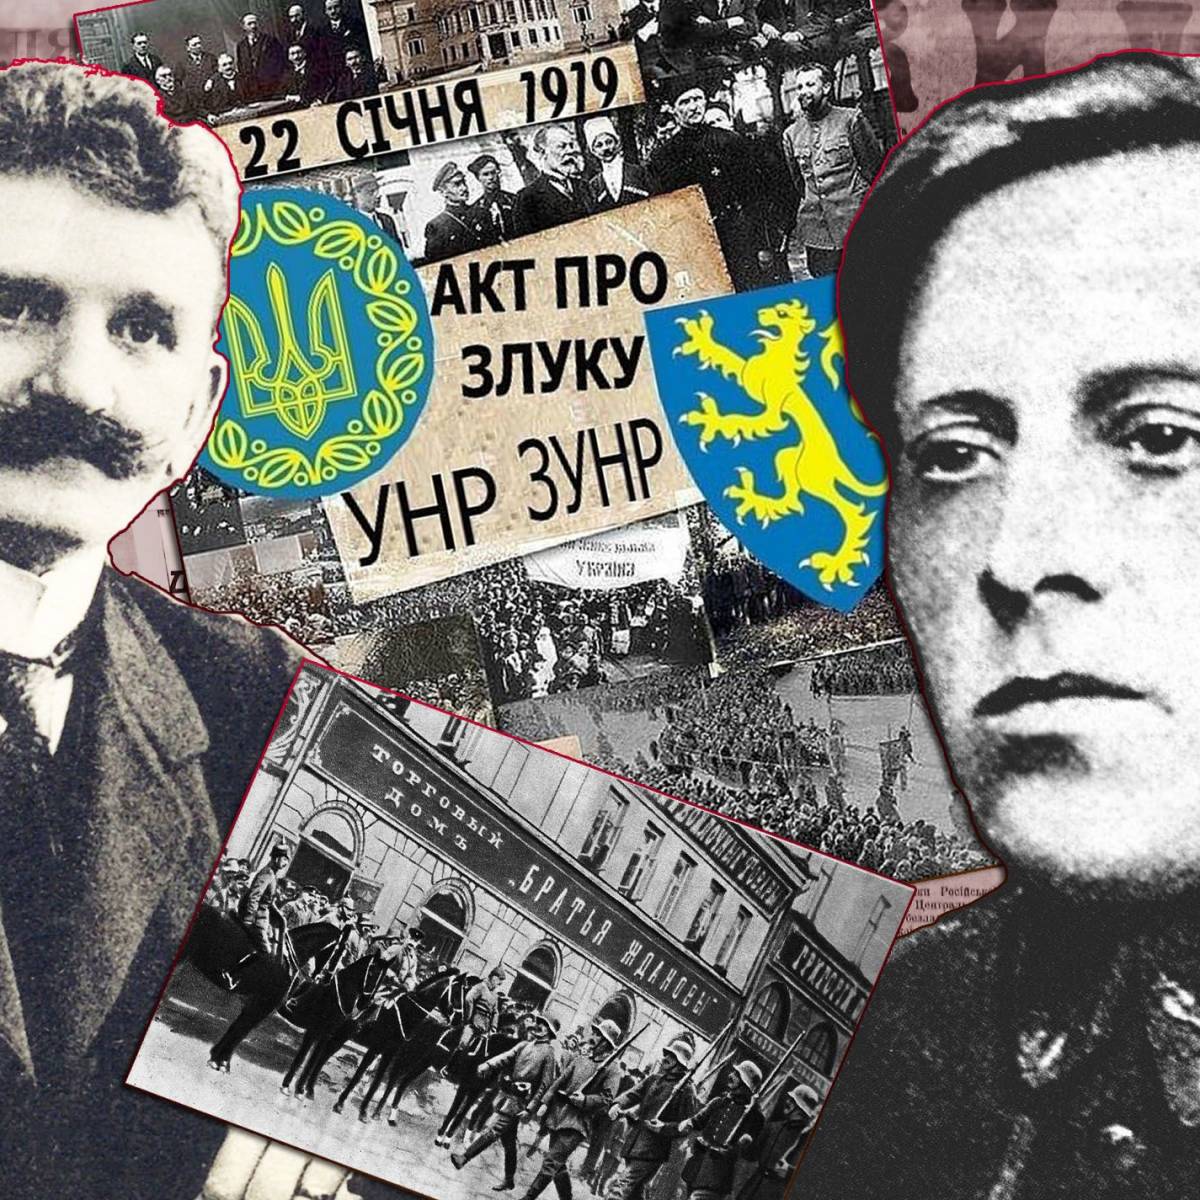 Злука УНР и ЗУНР 1919 года ничему не научила украинство